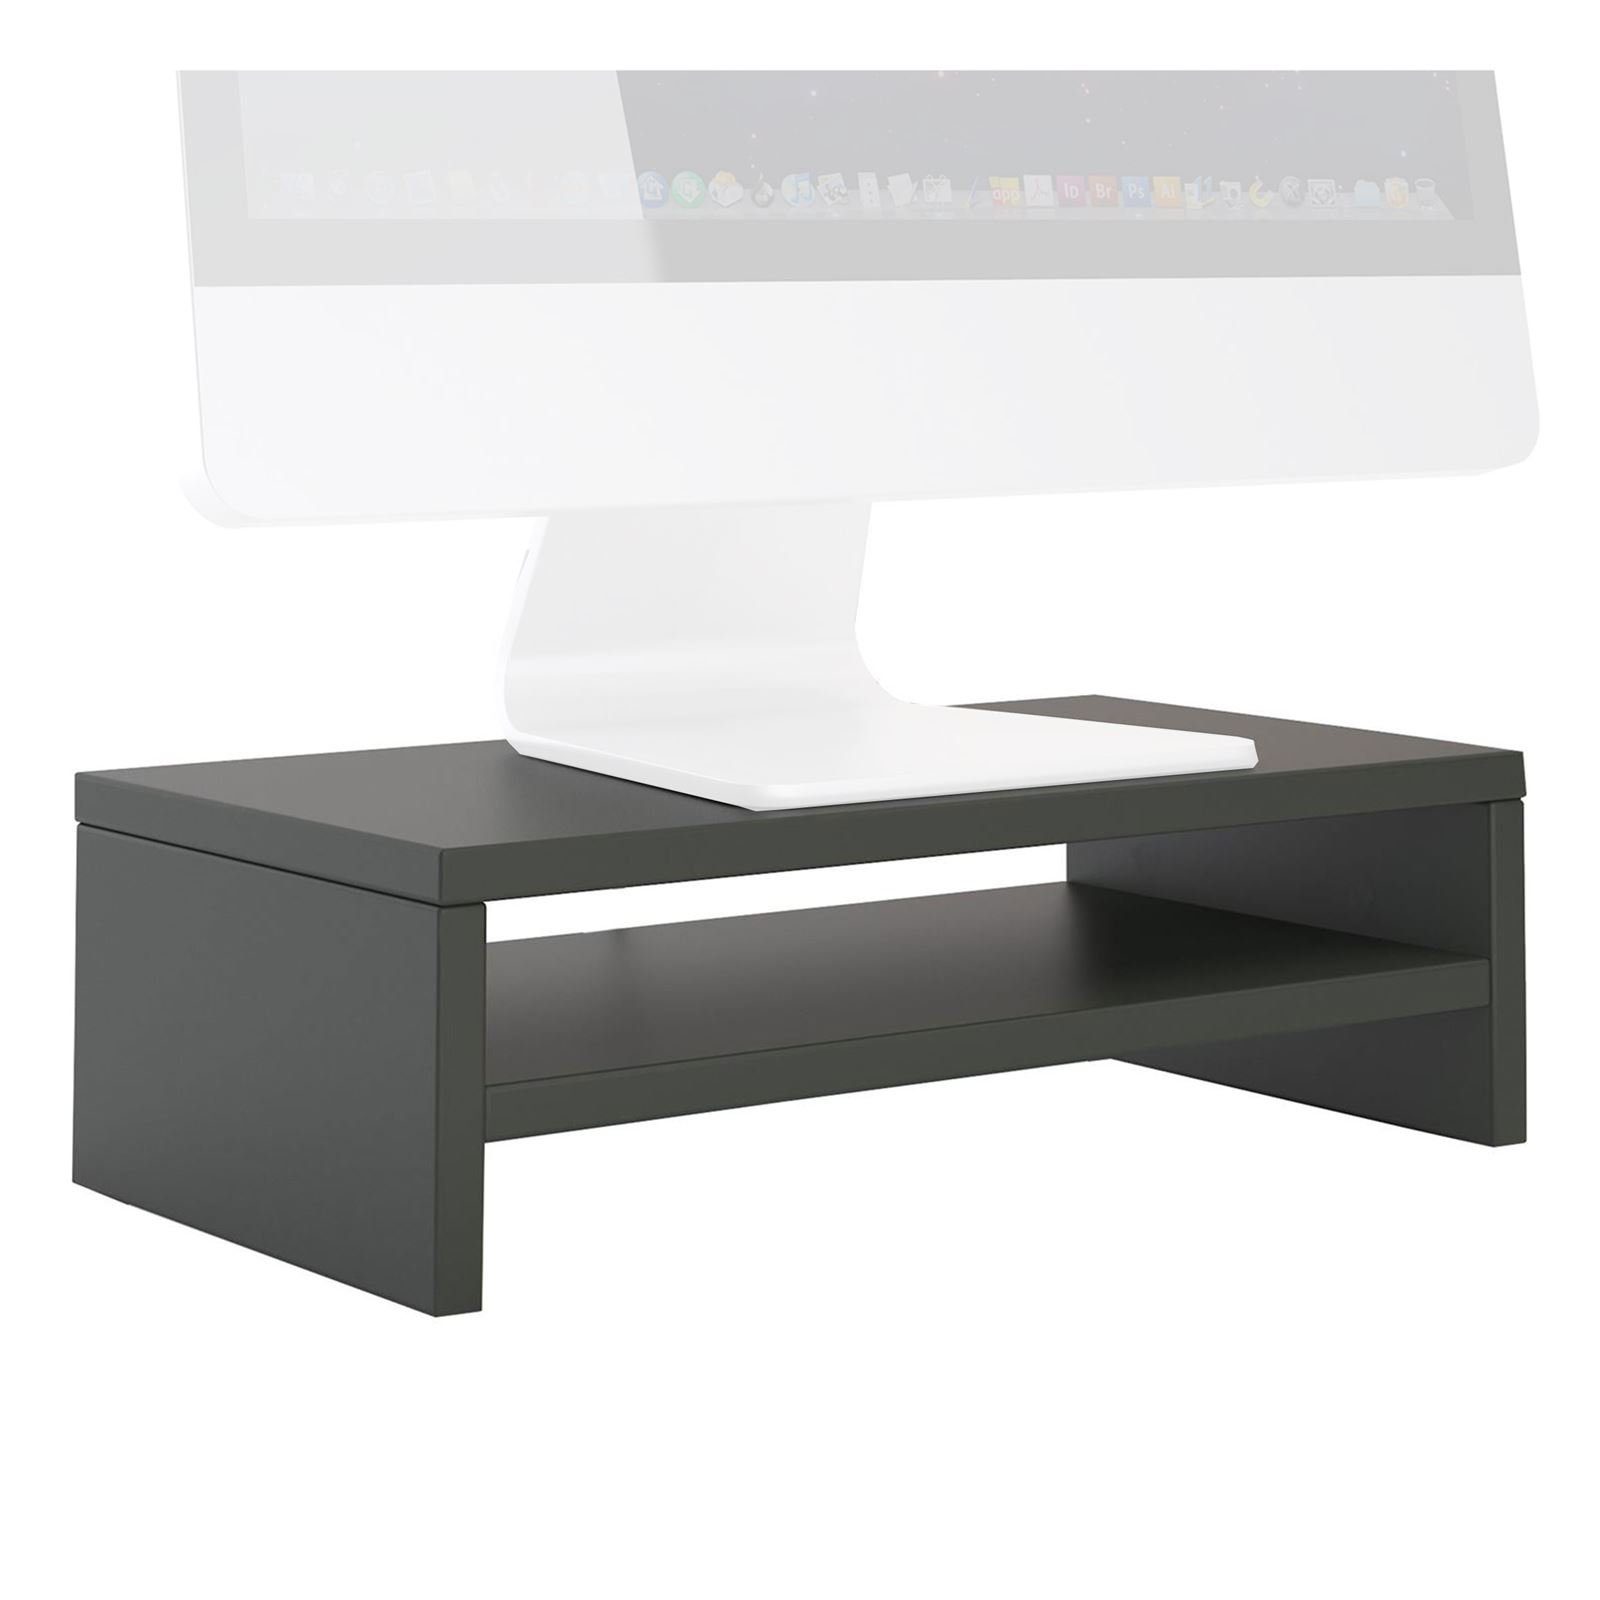 CARO-Möbel Schreibtischaufsatz SUBIDA, Bildschirmaufsatz Monitorständer Monitorerhöhung inkl. Ablagefach grau